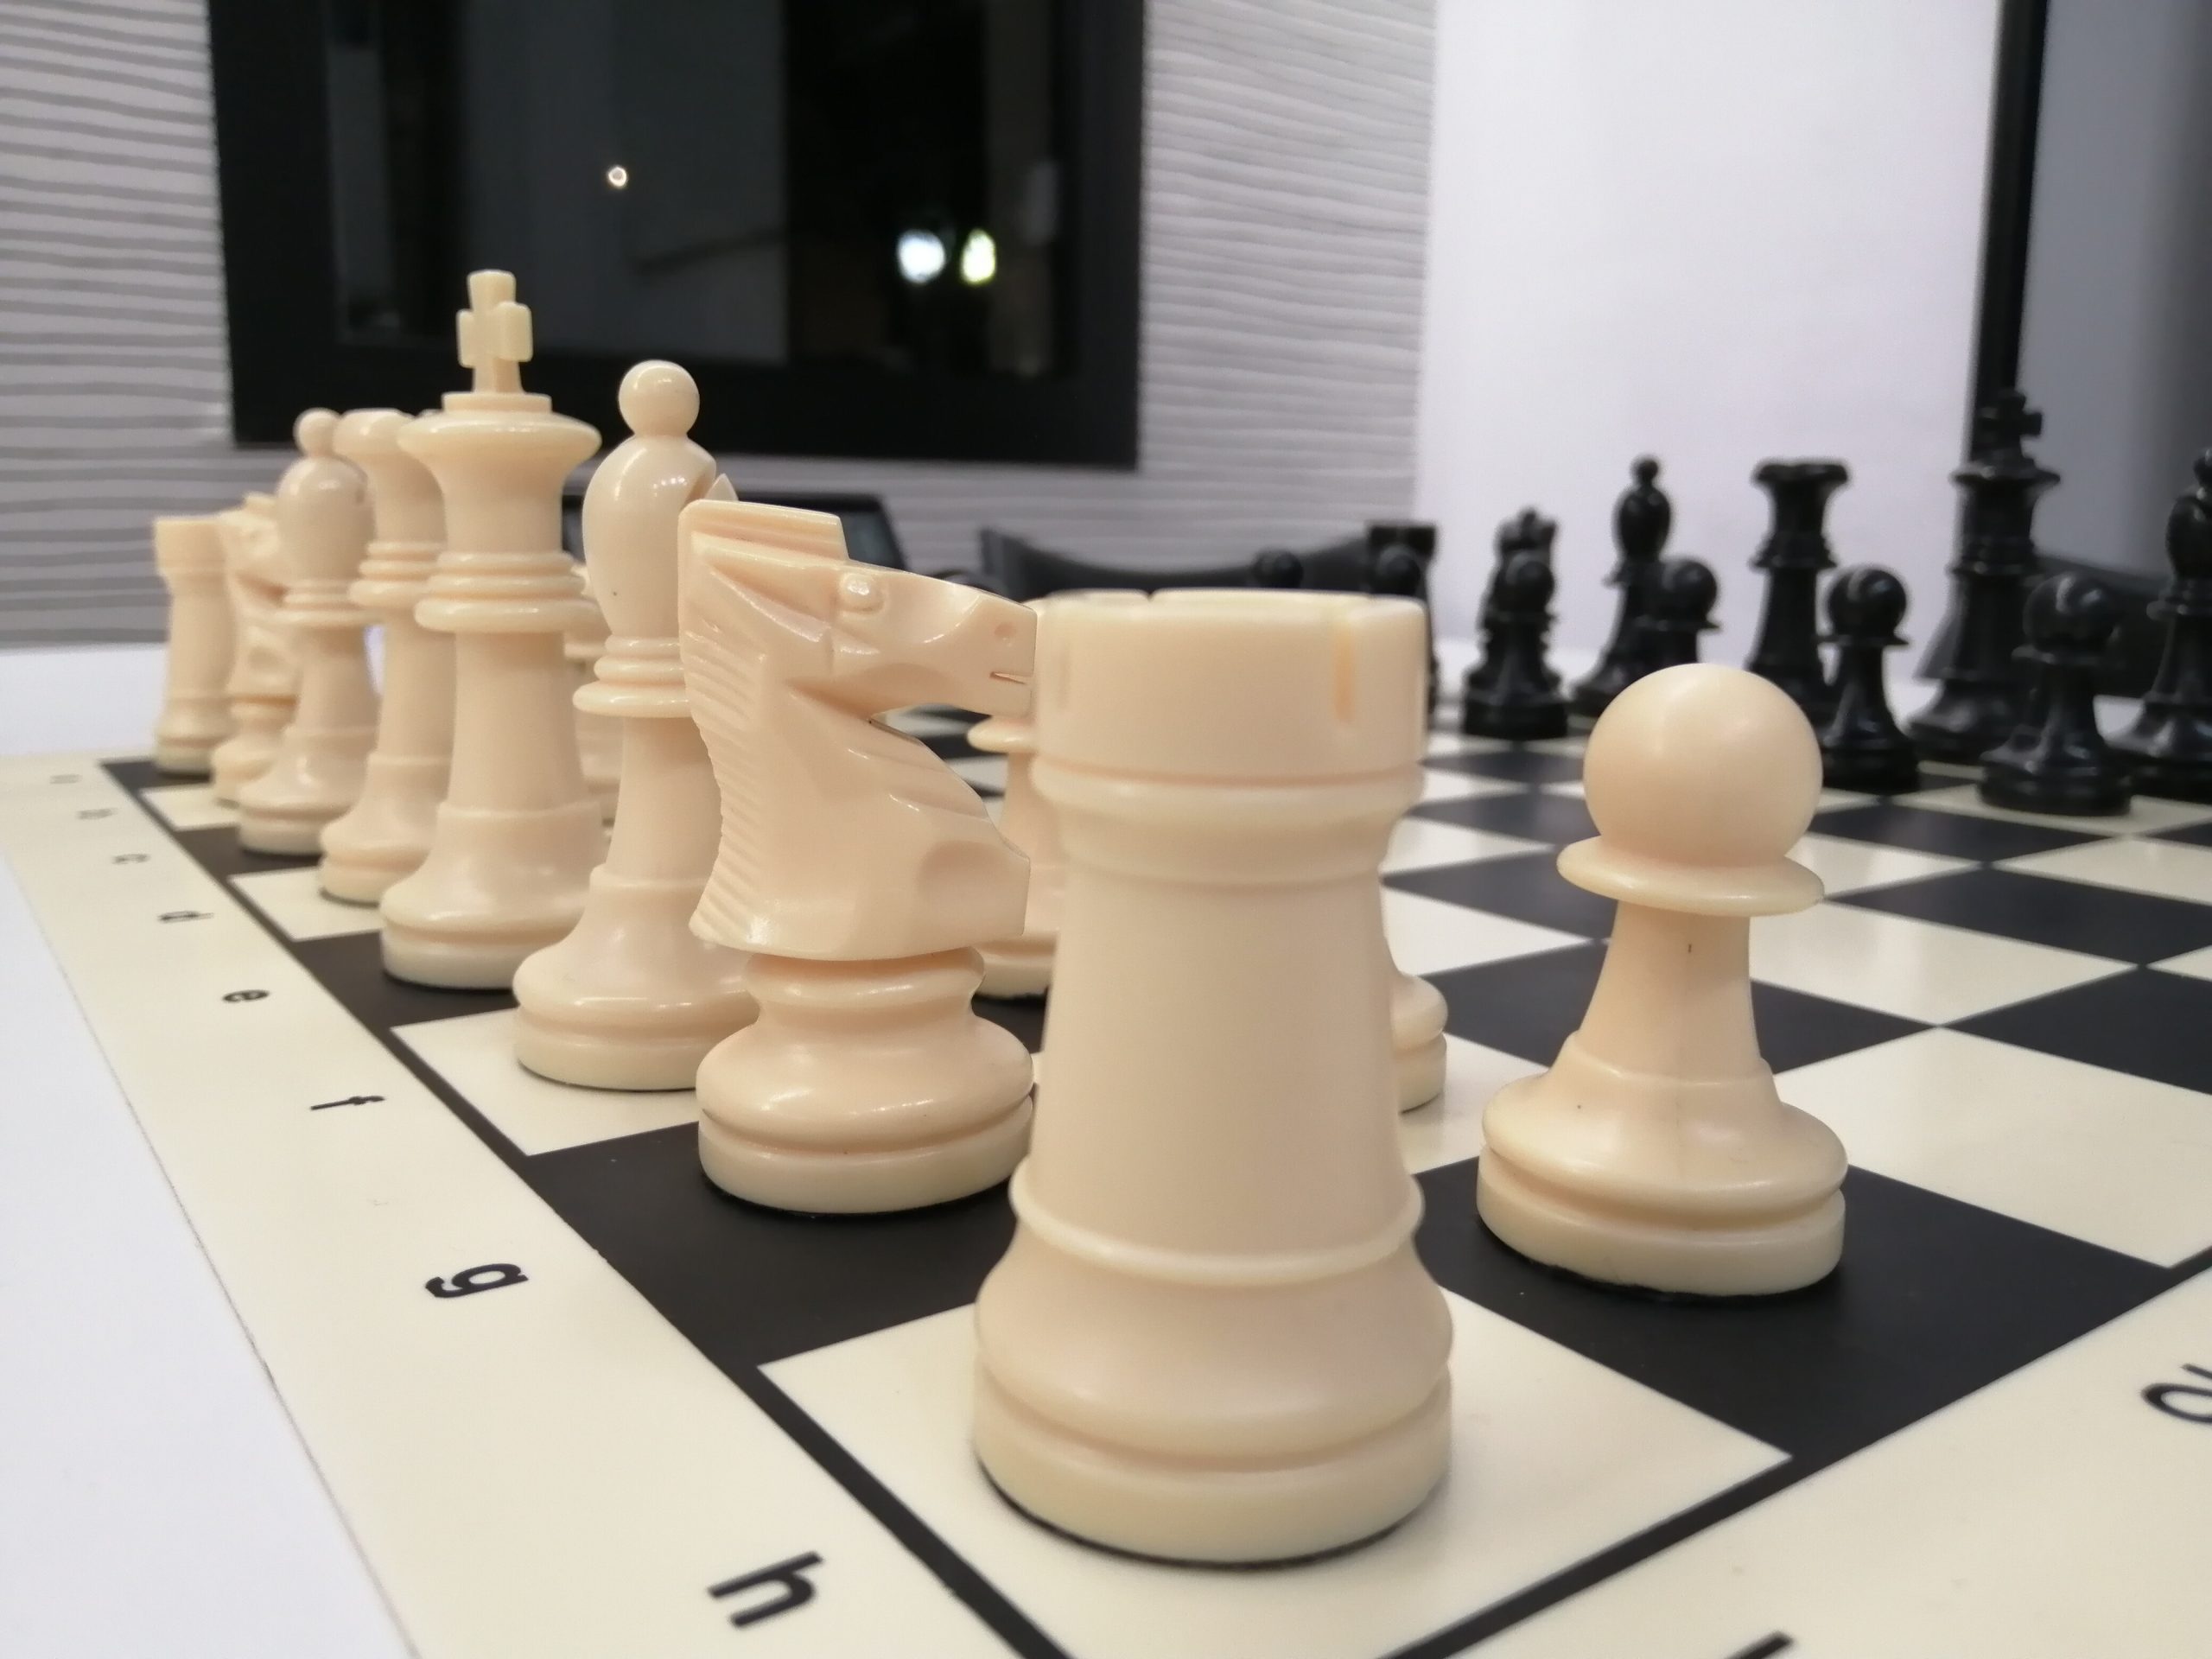 club de ajedrez blanco y negro en Madrid. Aprender ajedrez es fácil en nuestra escuela de ajedrez. Jugamos la liga madrileña de ajedrez FMA.